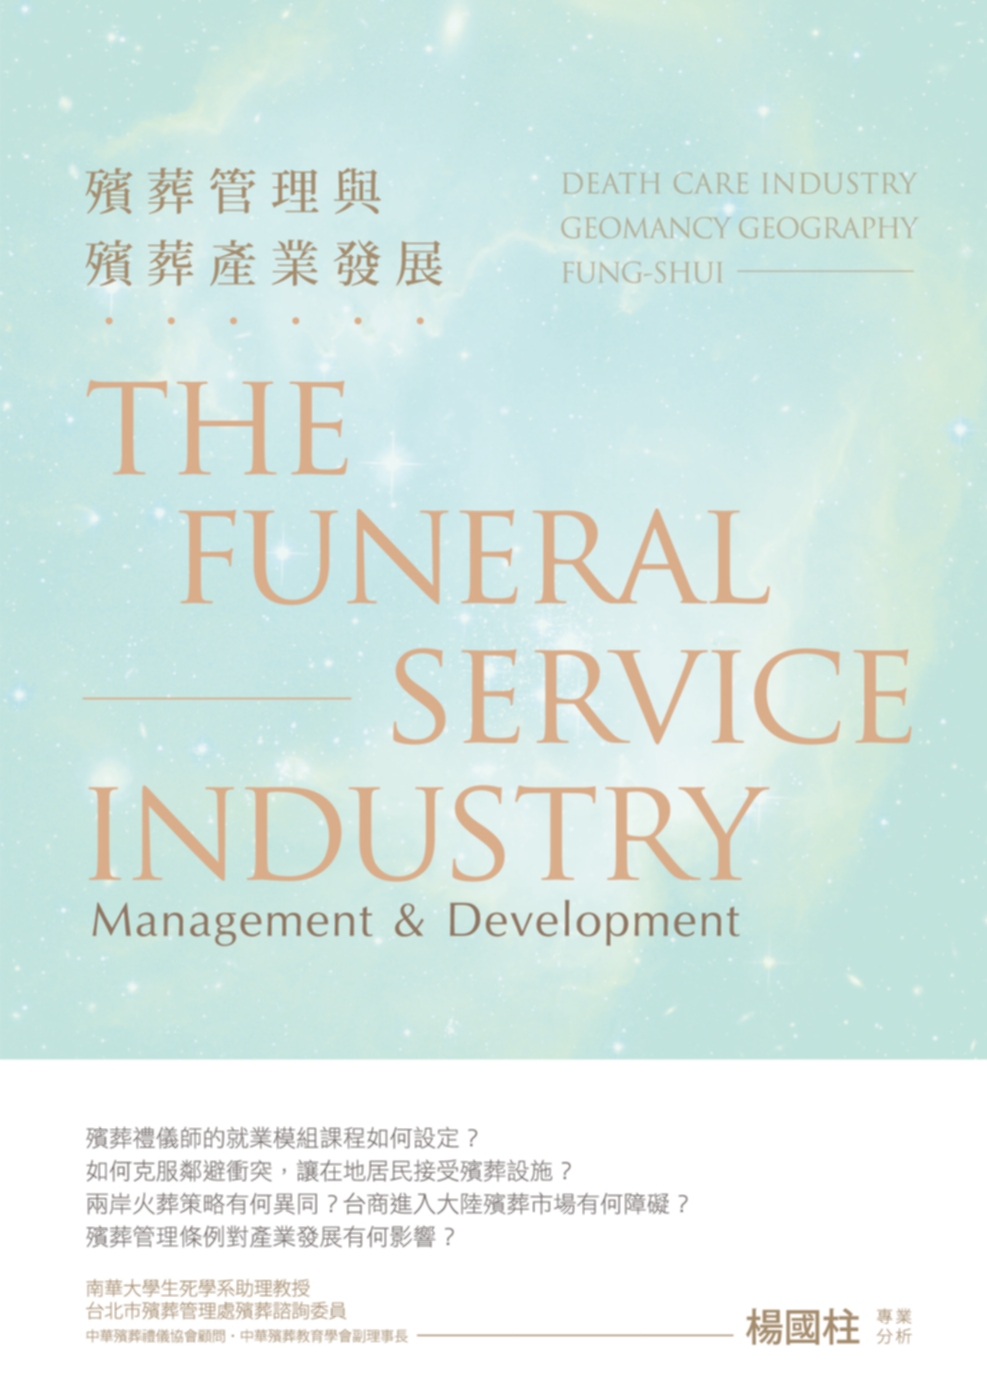 殯葬管理與殯葬產業發展